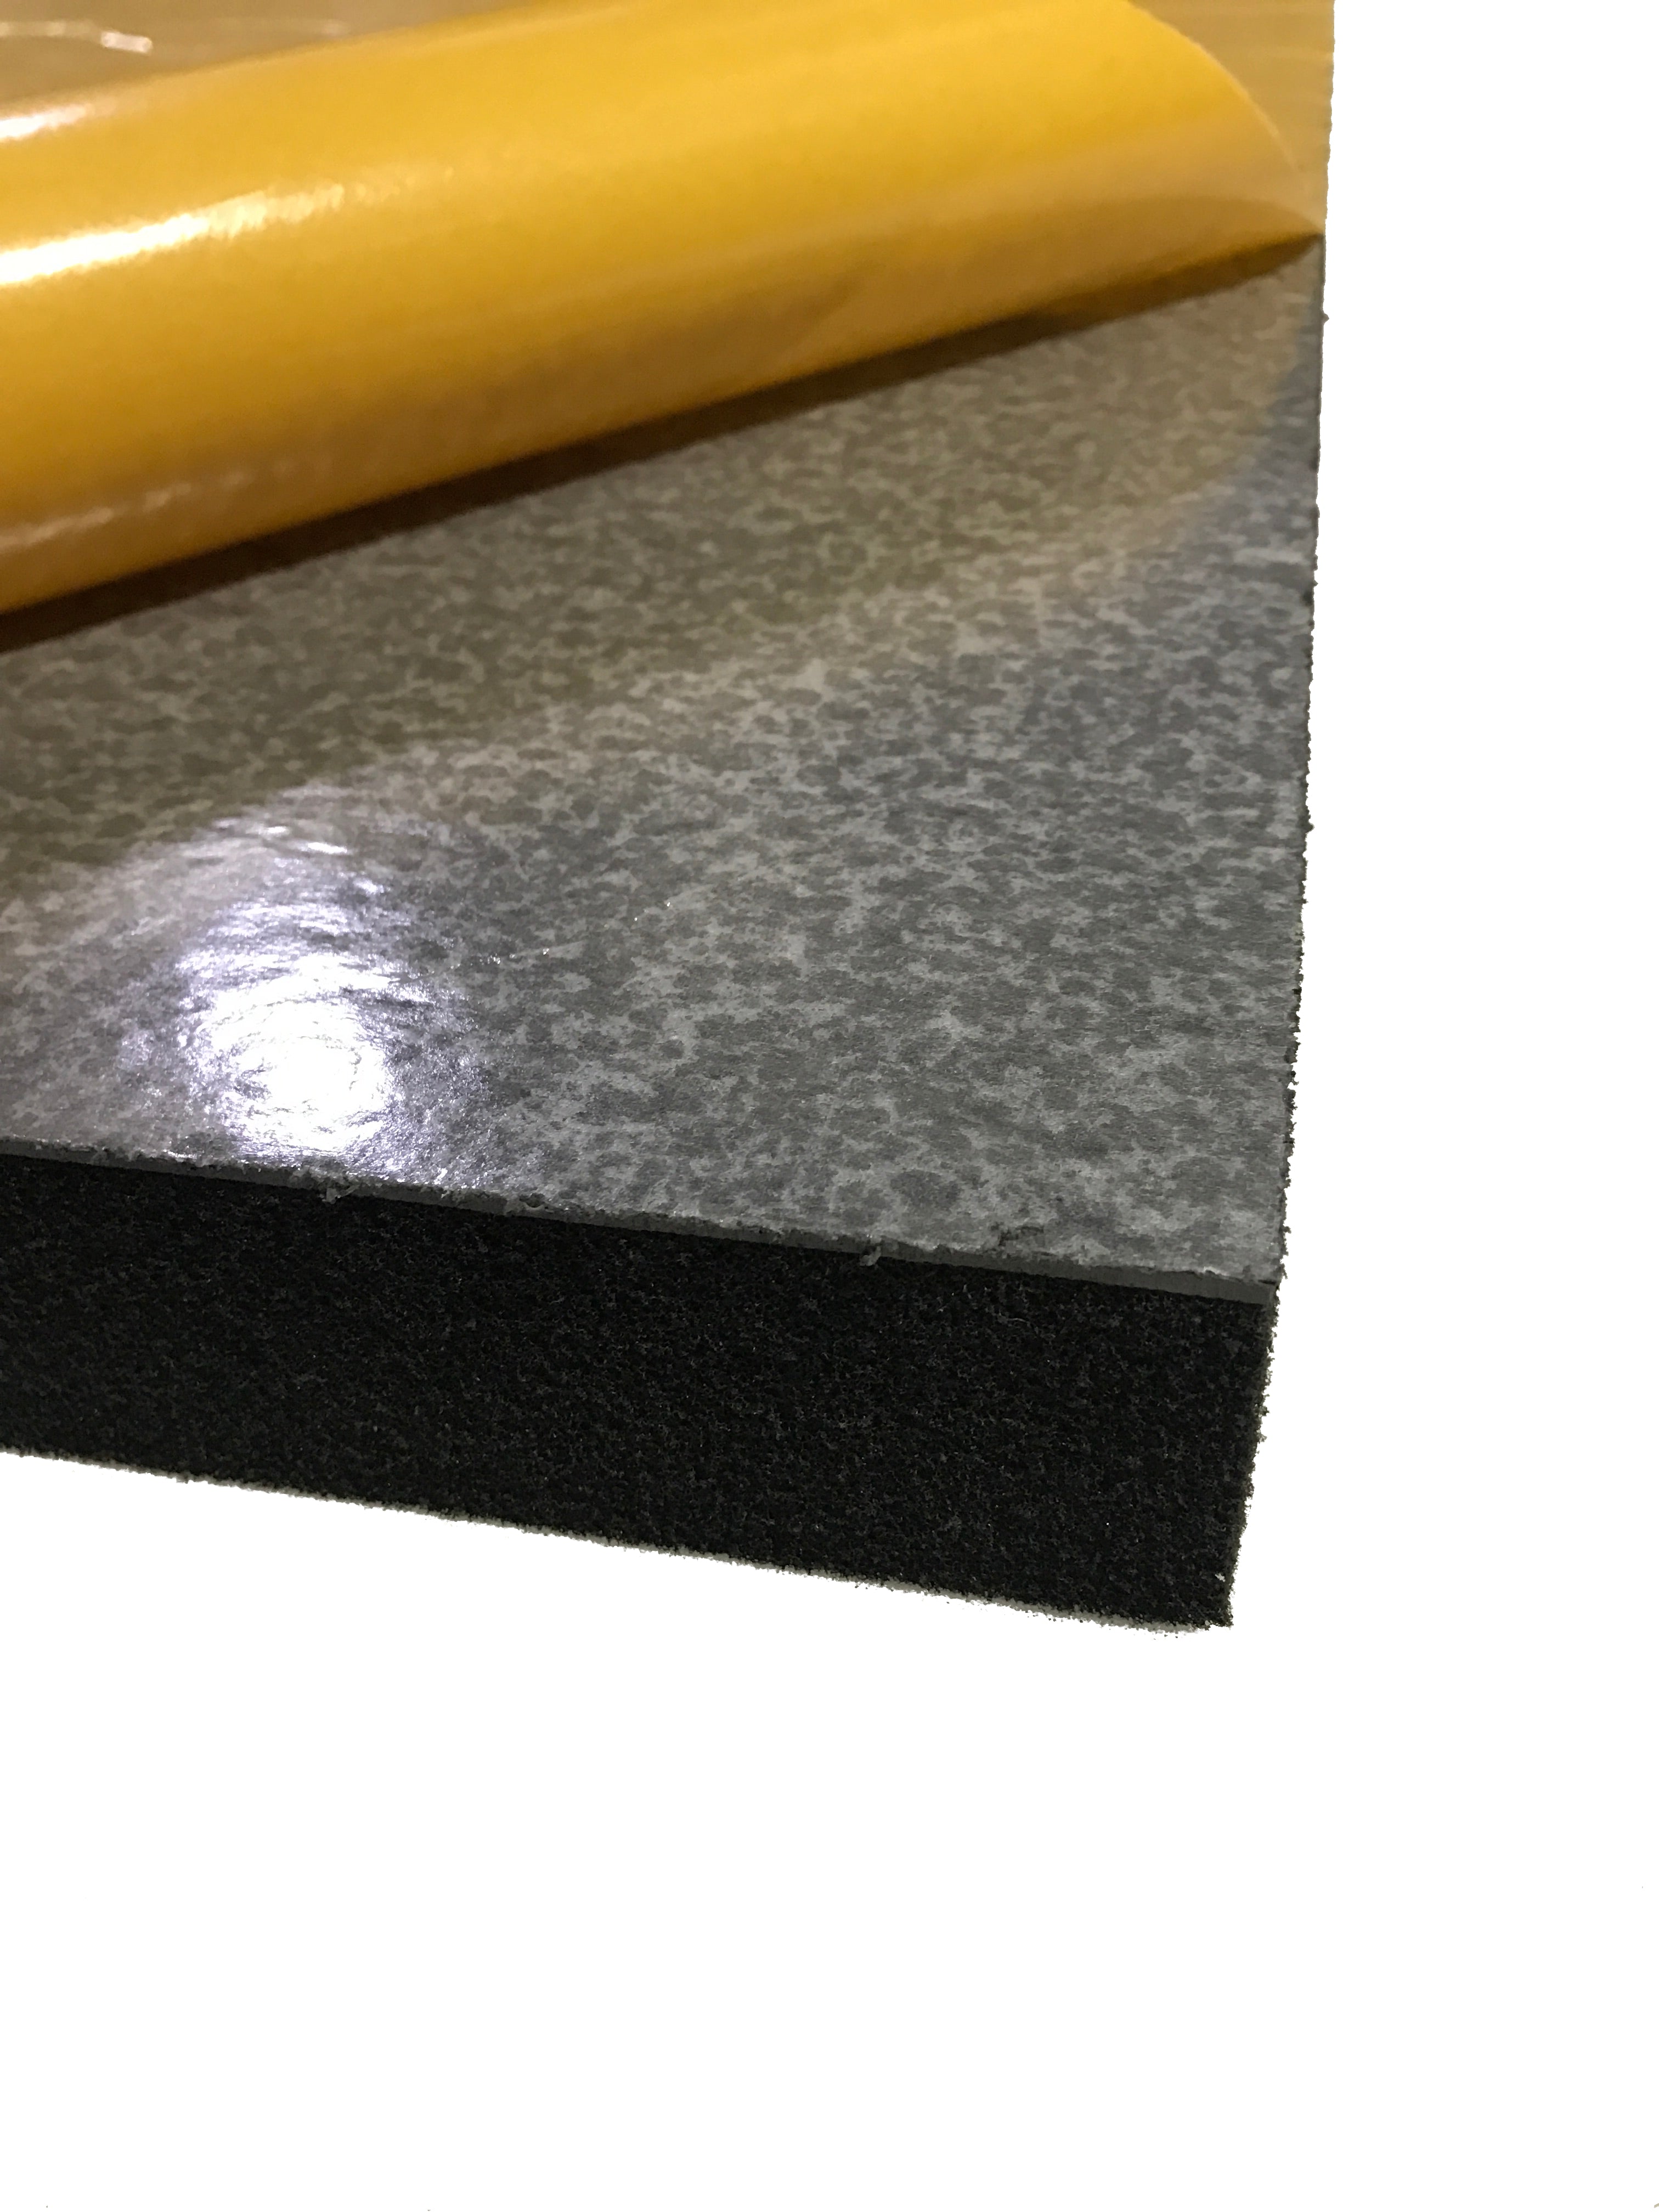 Silent Panel 10kg/50mm - MLV & Acoustic Foam Composite - B-Grade